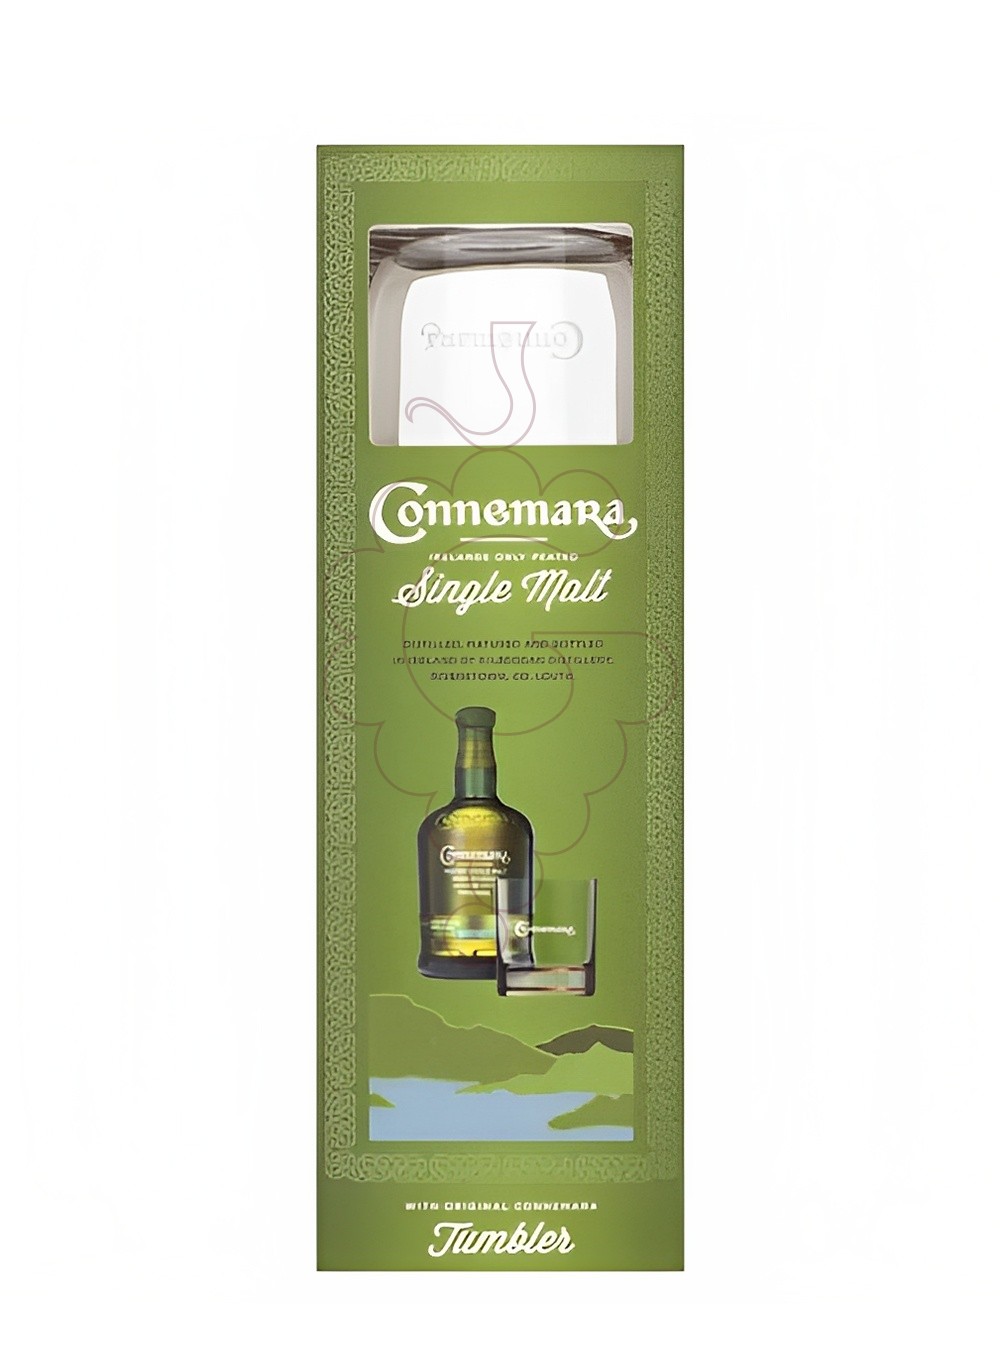 Photo Whisky Connemara Pack (1 u + glass)